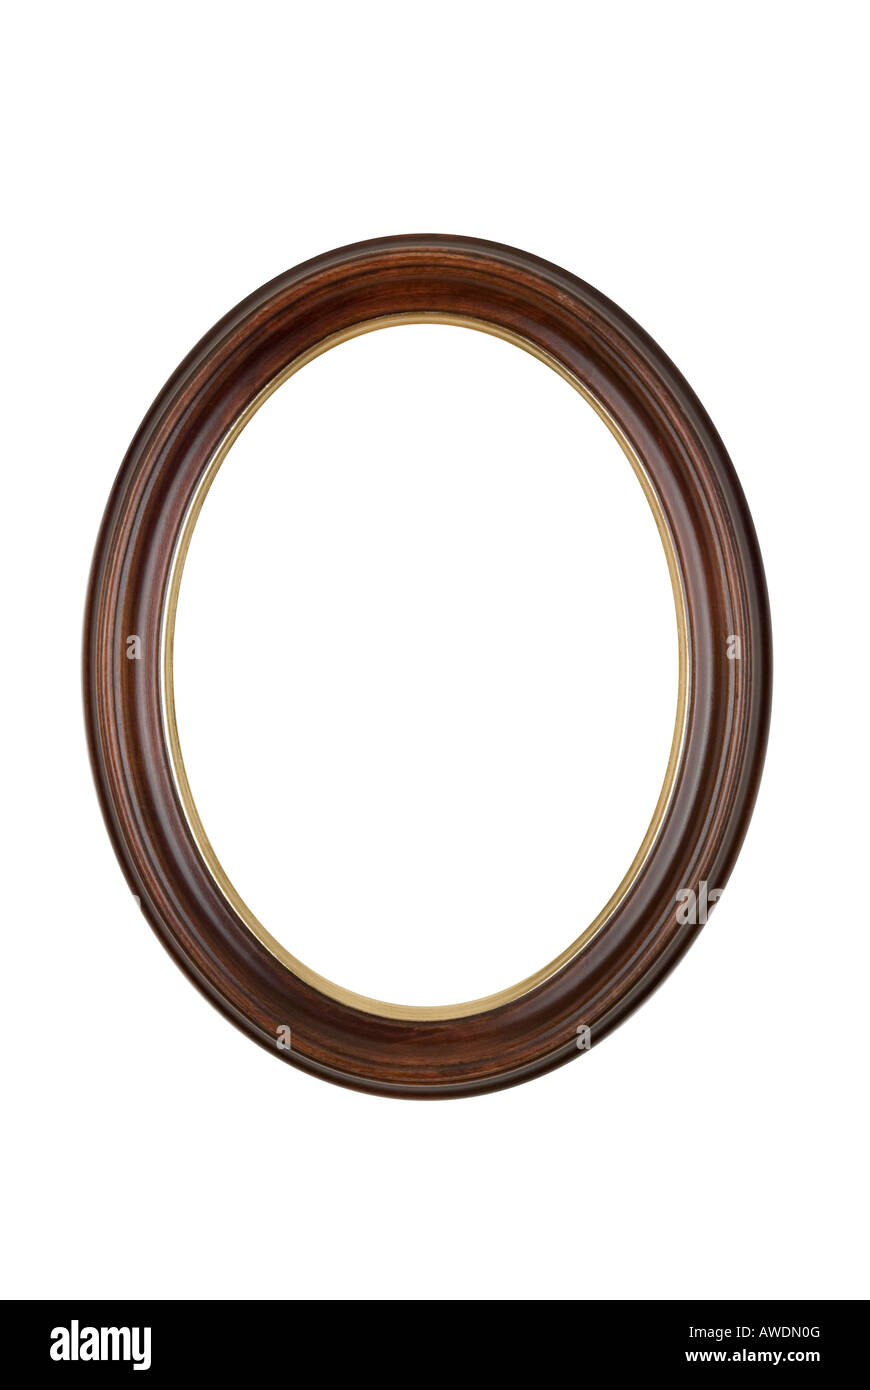 Bild Rahmen Oval runden braunen Holz, isoliert auf weißem Hintergrund. Stockfoto